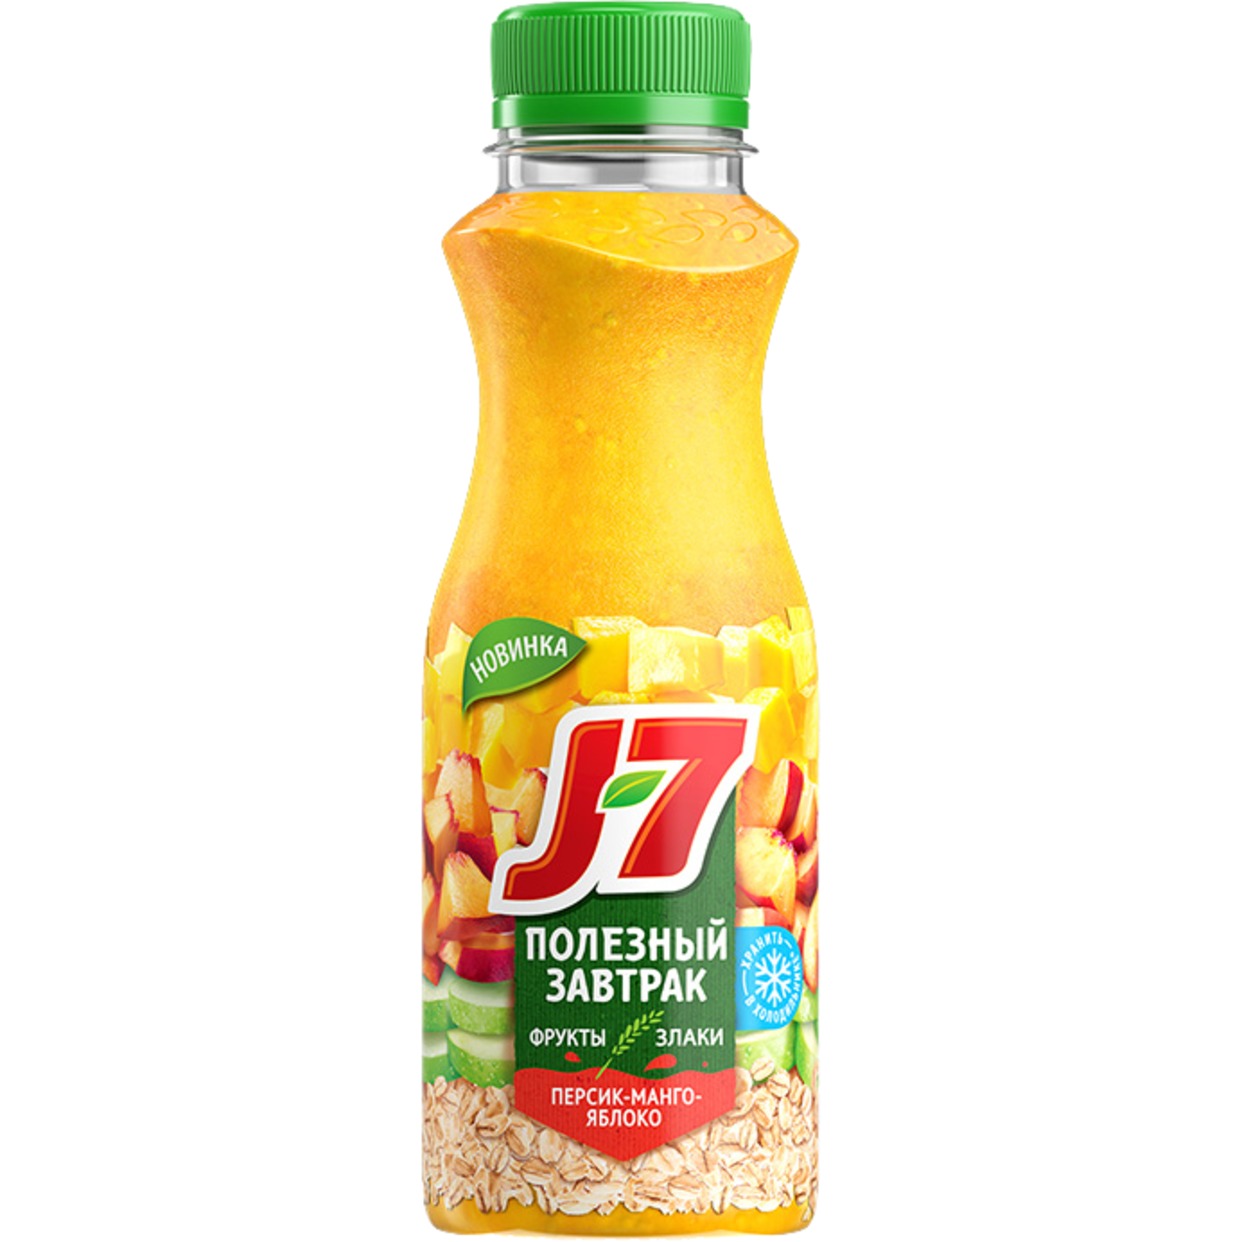 Напиток Полезный завтрак J7 персик-манго-яблоко 300 мл по акции в Пятерочке